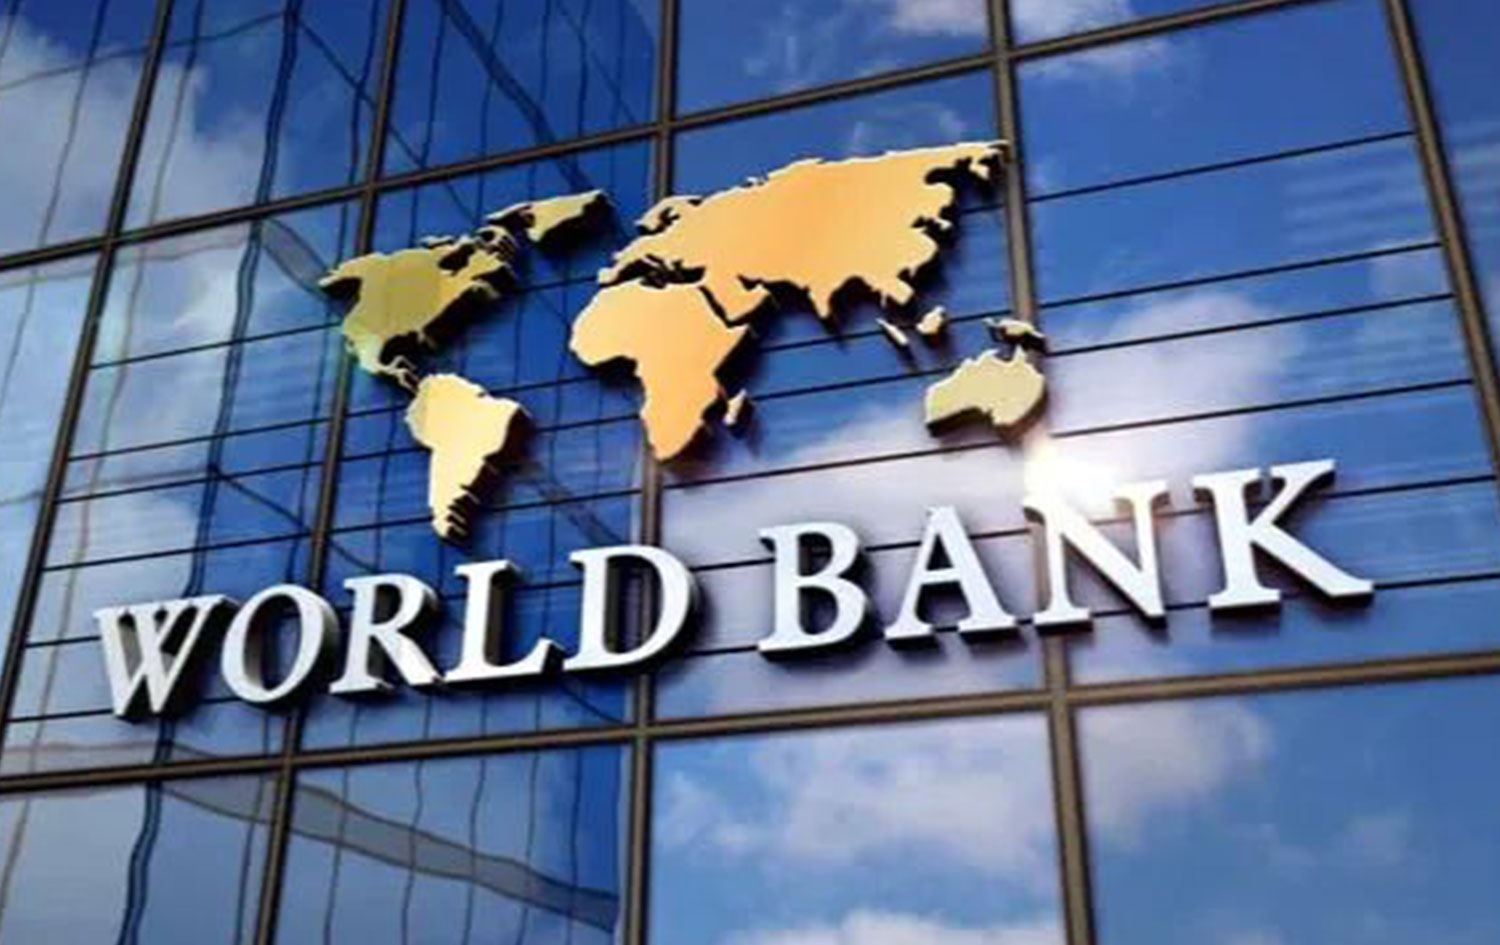 Dünya Bankası'nın yeni başkanı Ajay Banga oldu